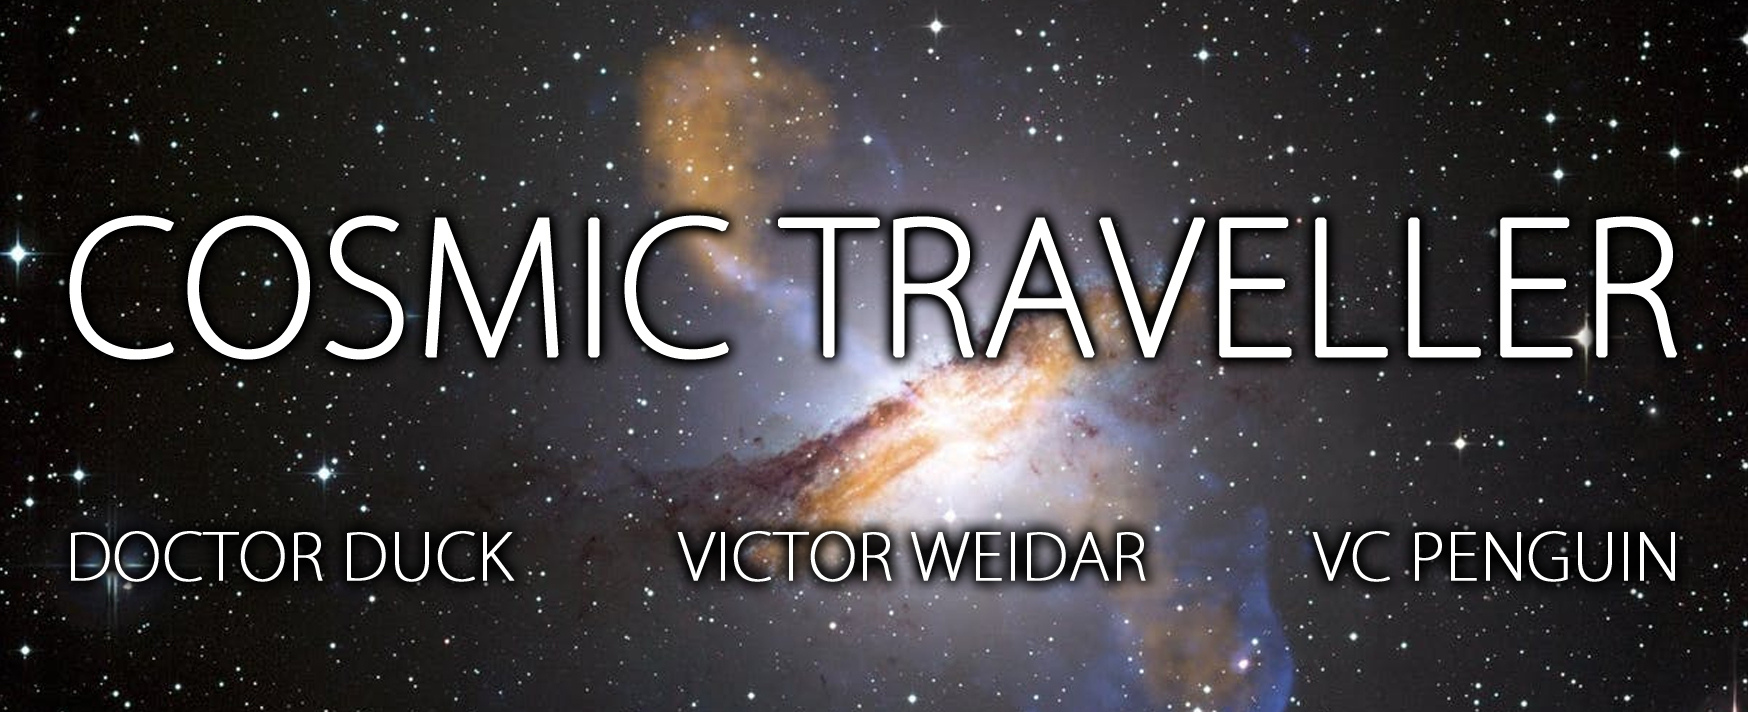 Cosmic Traveller